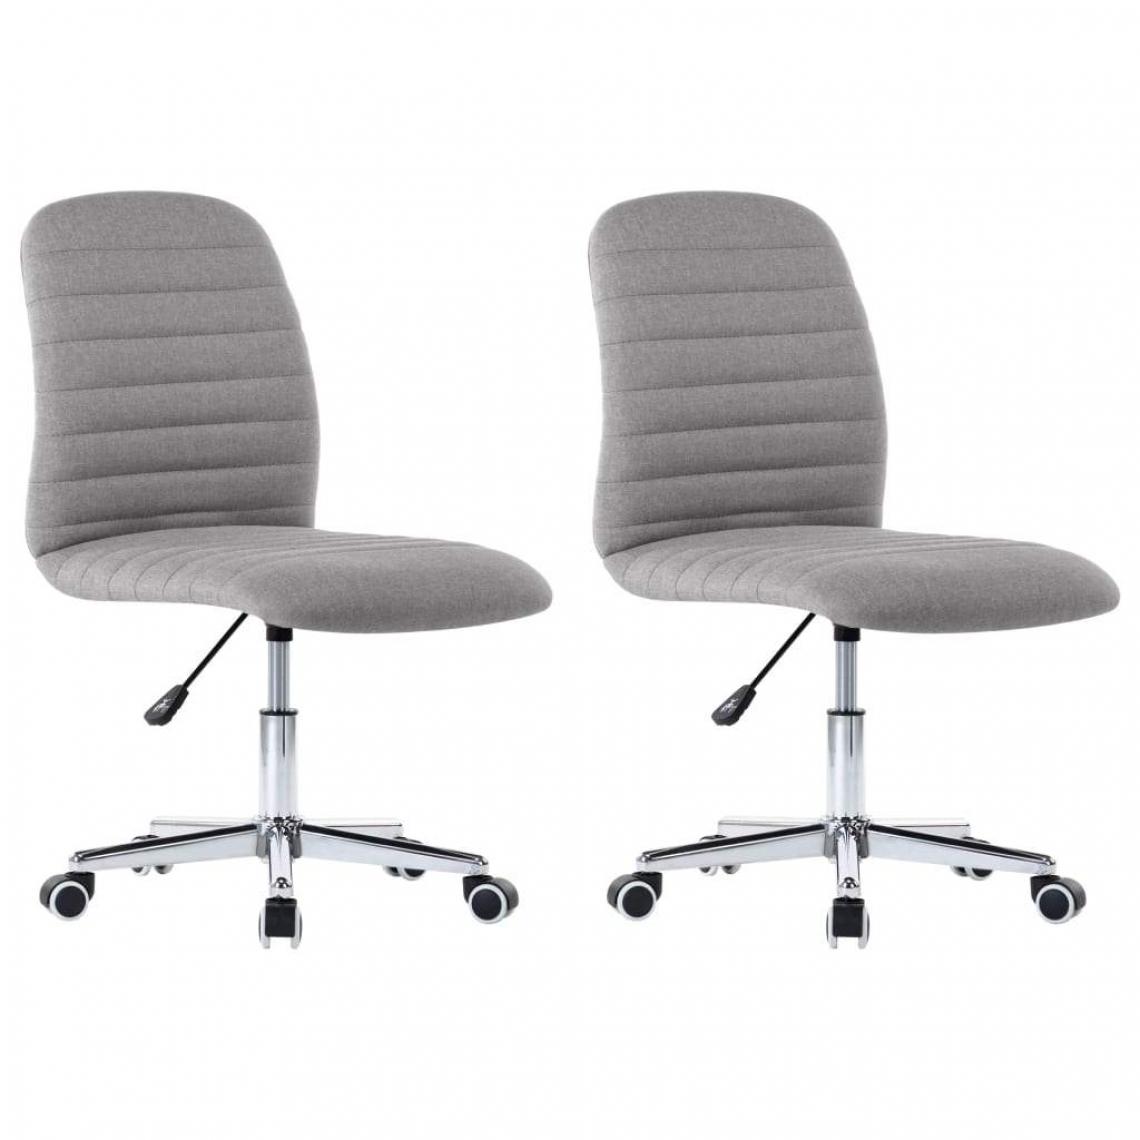 Decoshop26 - Lot de 2 chaises de salle à manger cuisine sur roulettes hauteur réglable en tissu gris clair CDS020494 - Chaises